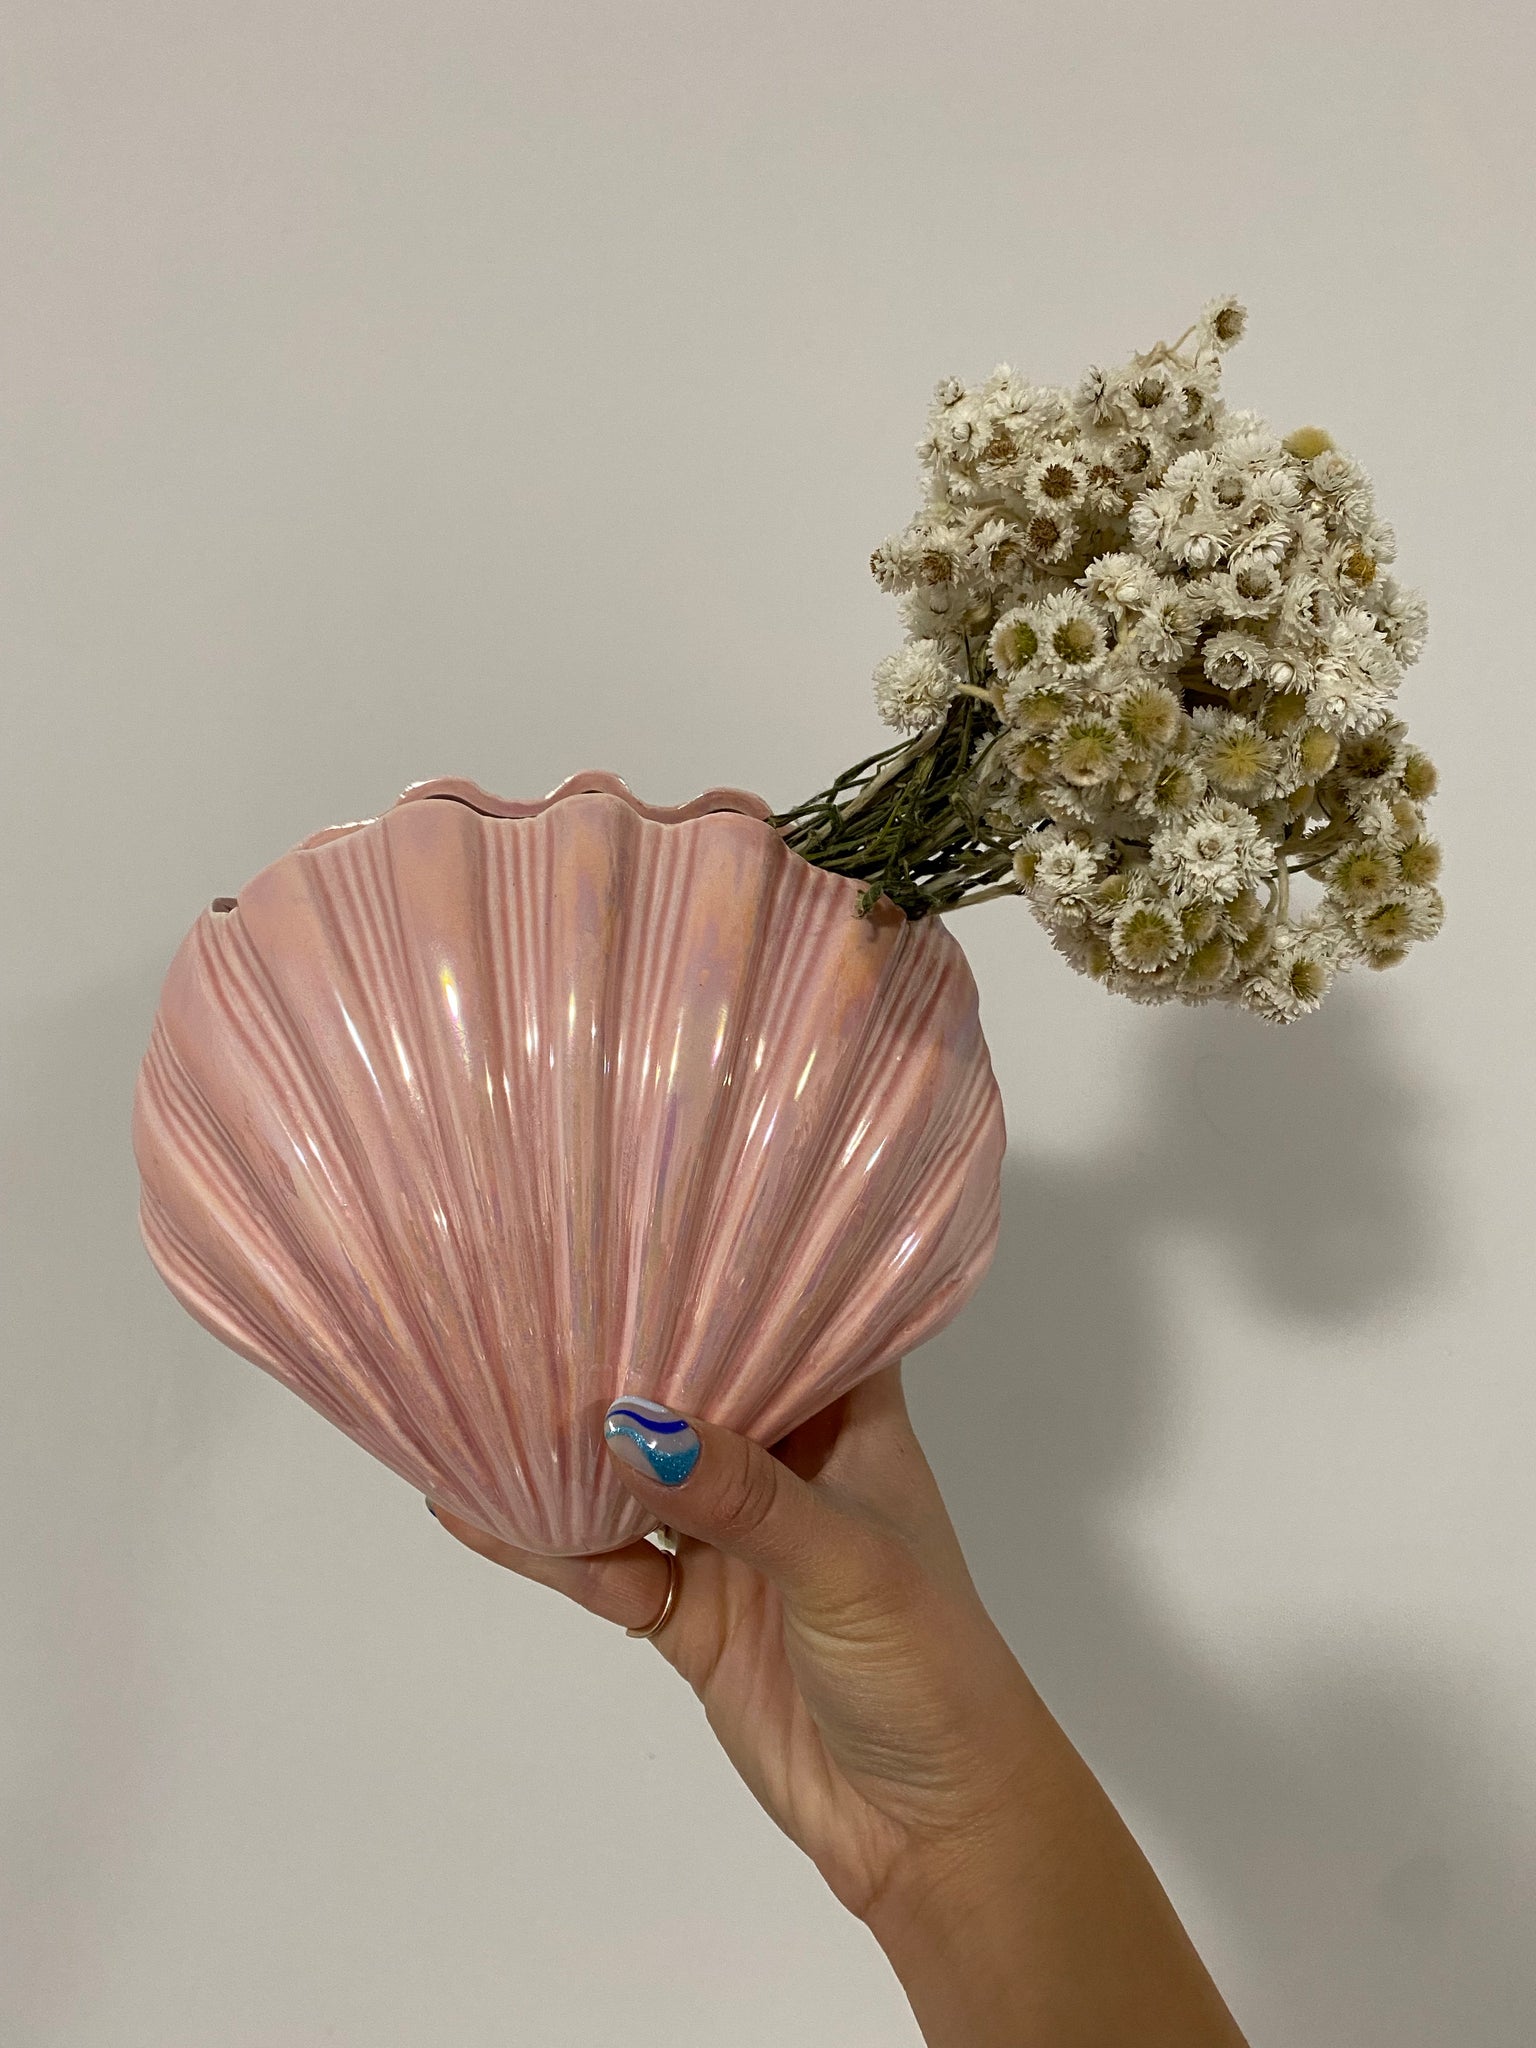 Cute little pink iridescent seashell vase